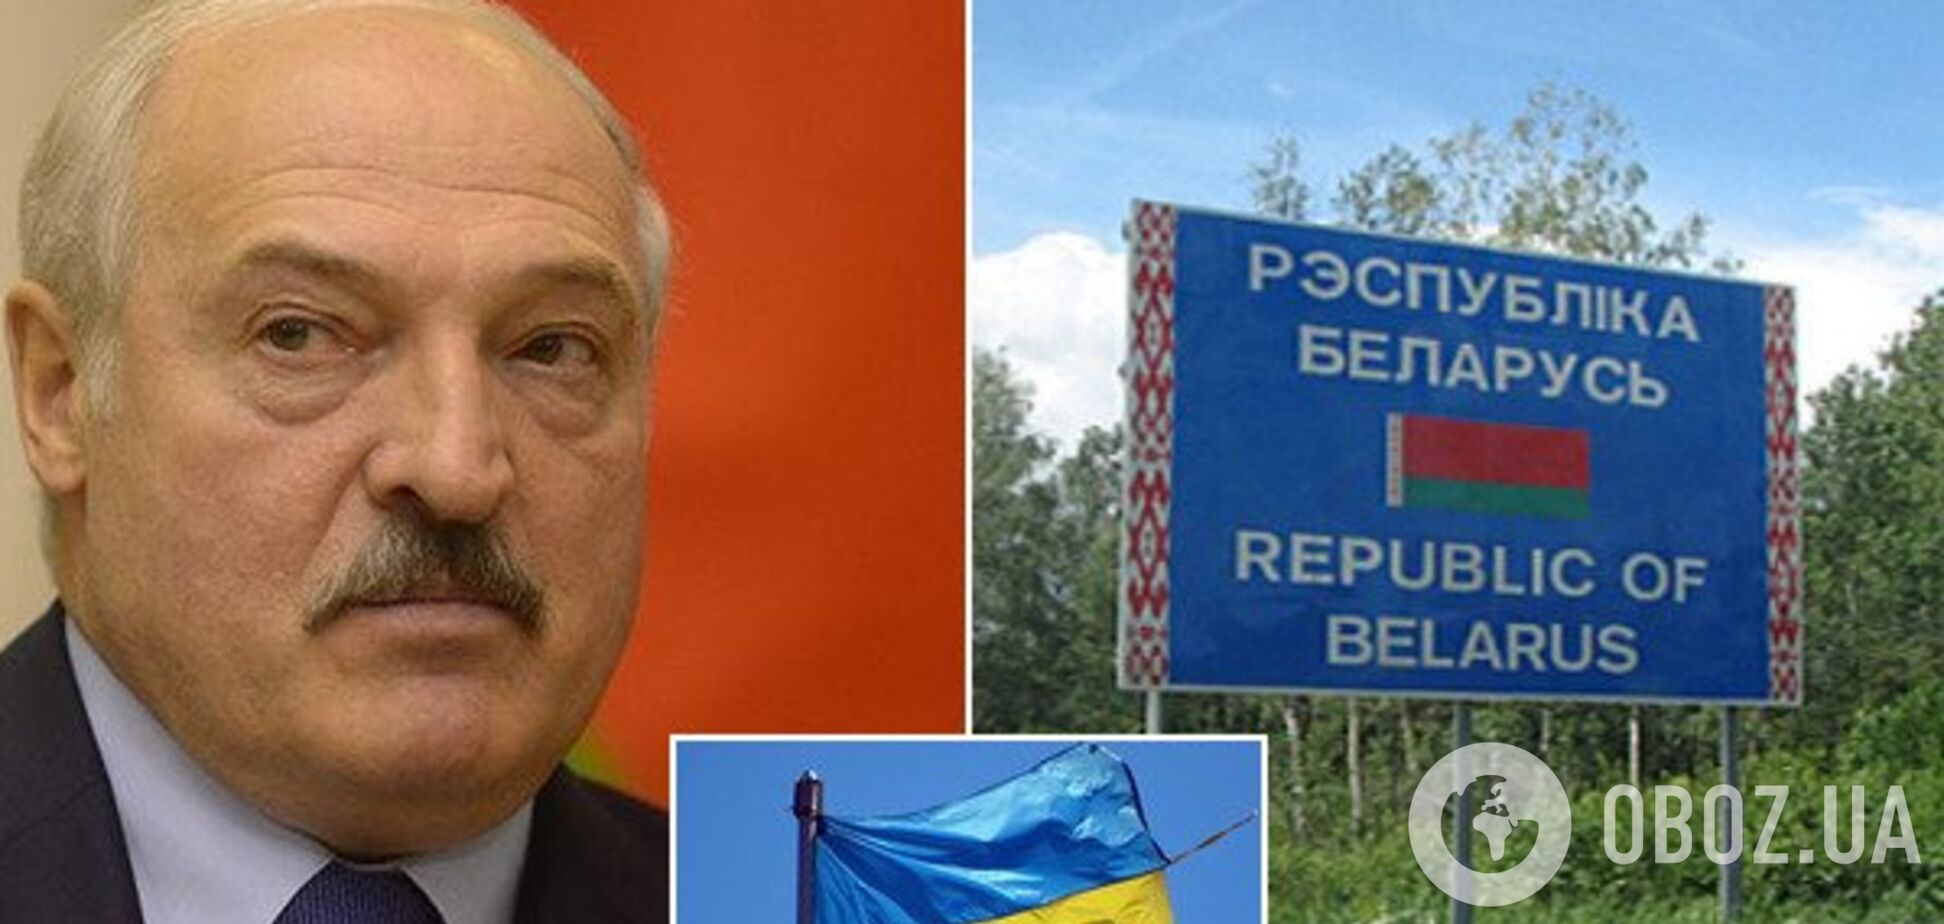 'Наглухо закрыли границу': Беларусь признала ложь Лукашенко об Украине